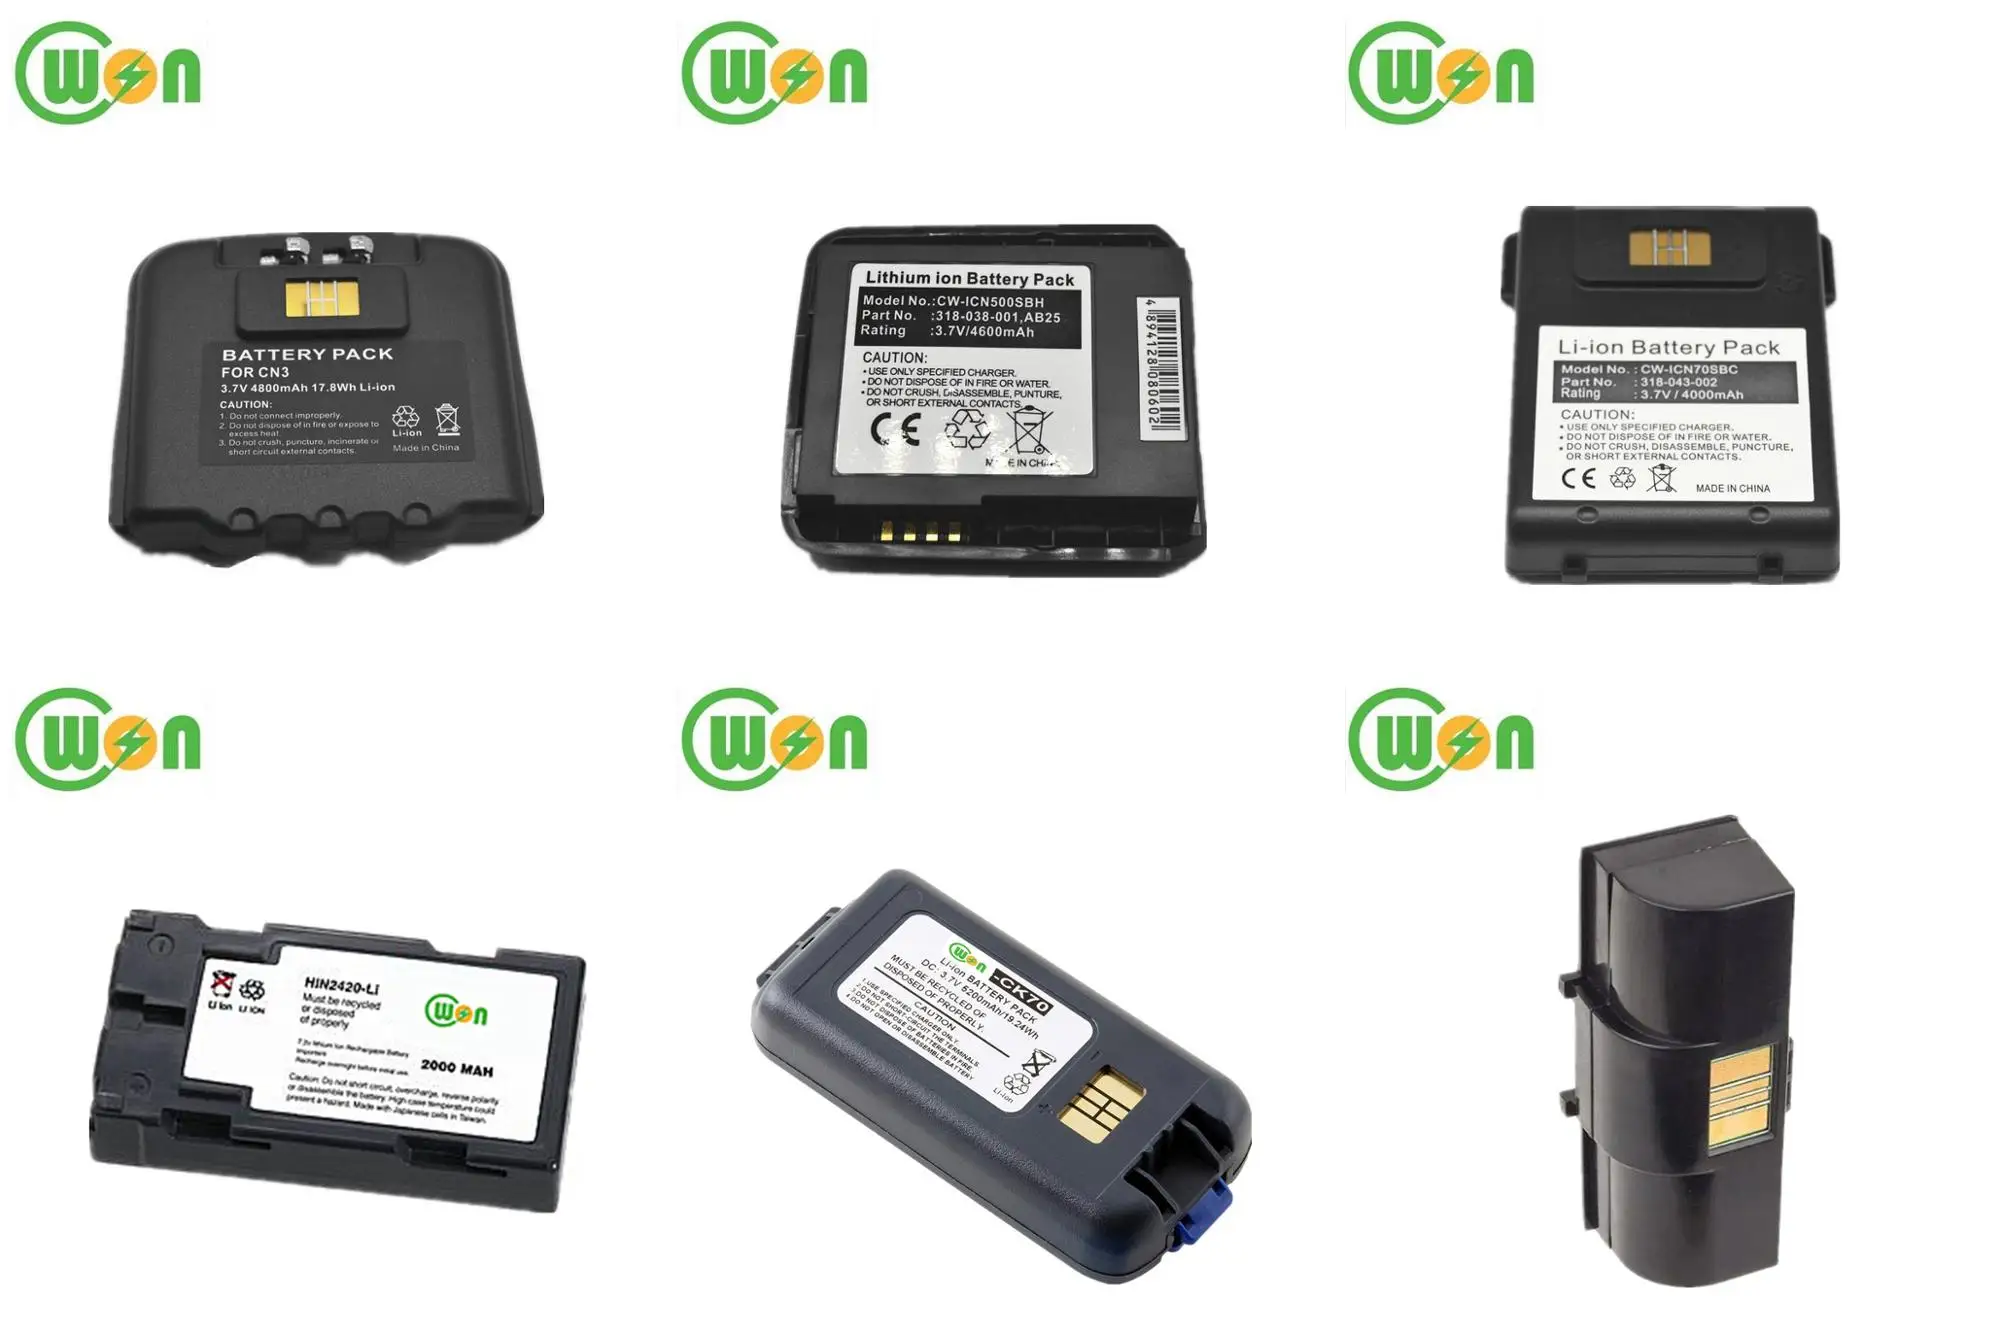 CN51, 3900mAh, 318-038-001, 318-039-001, AB24, AB25 Battery Intermec CN50 CN51 Battery Replacement for Intermec CN50